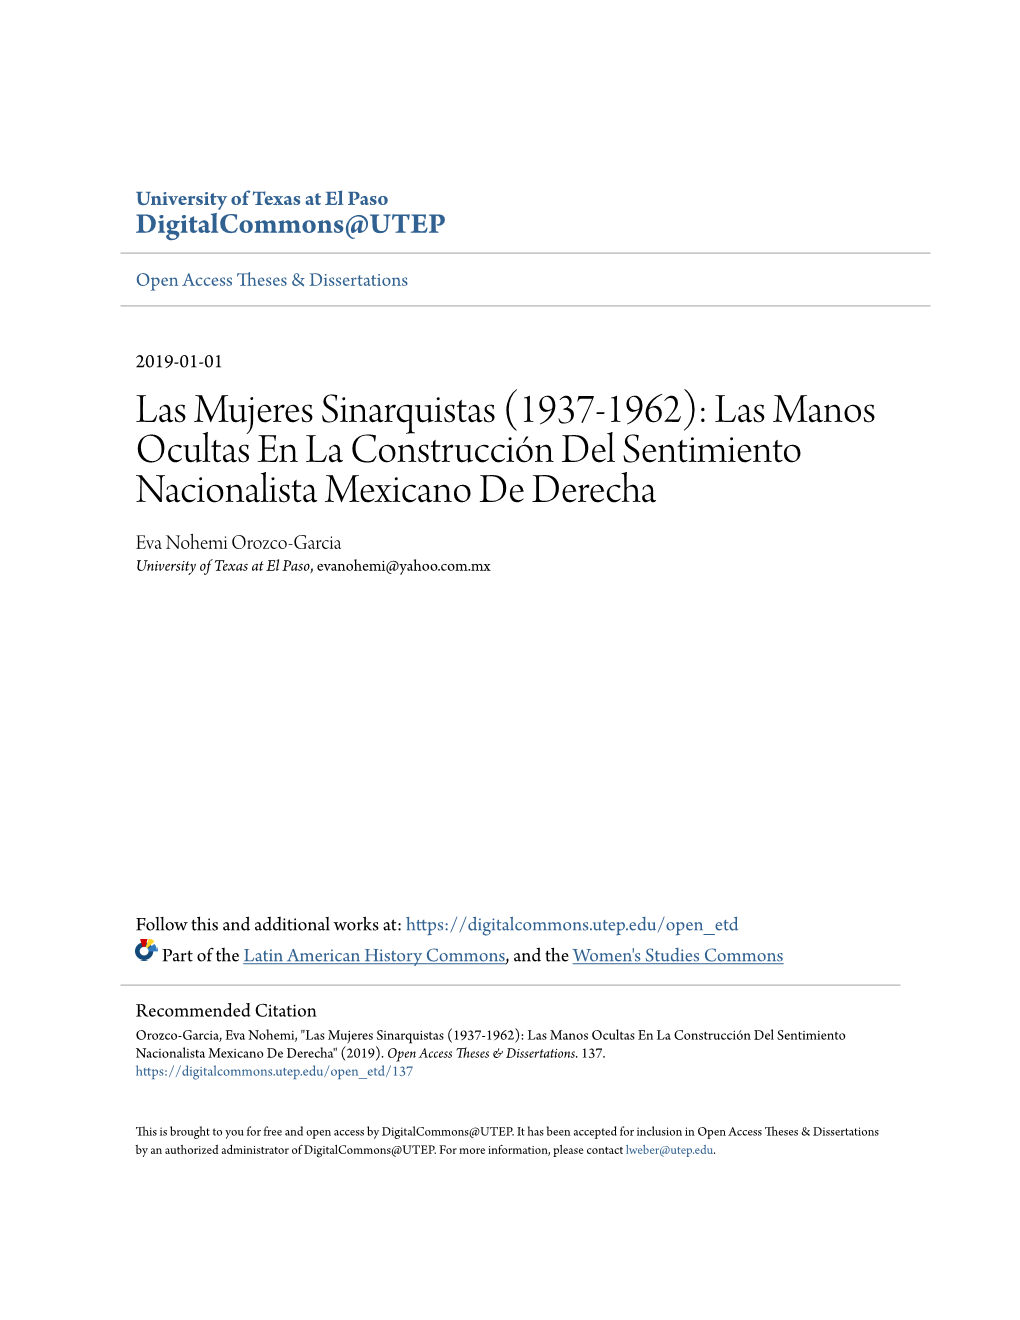 Las Mujeres Sinarquistas (1937-1962): Las Manos Ocultas En La Construcción Del Sentimiento Nacionalista Mexicano De Derecha